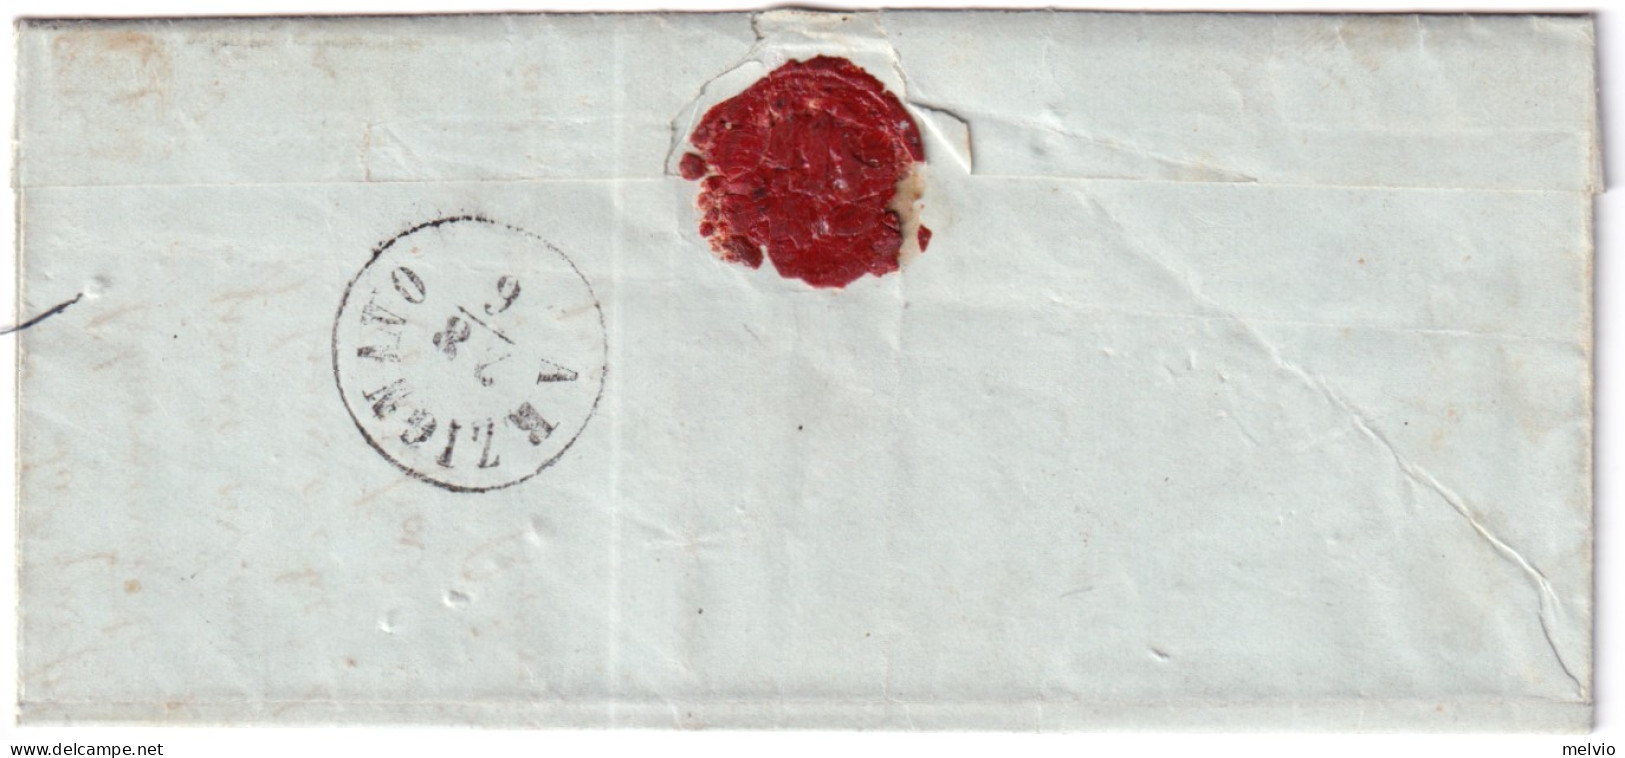 1868-VICENZA C1+punti (28.6) Su Lettera Completa Testo Affrancata C.20 - Marcophilia